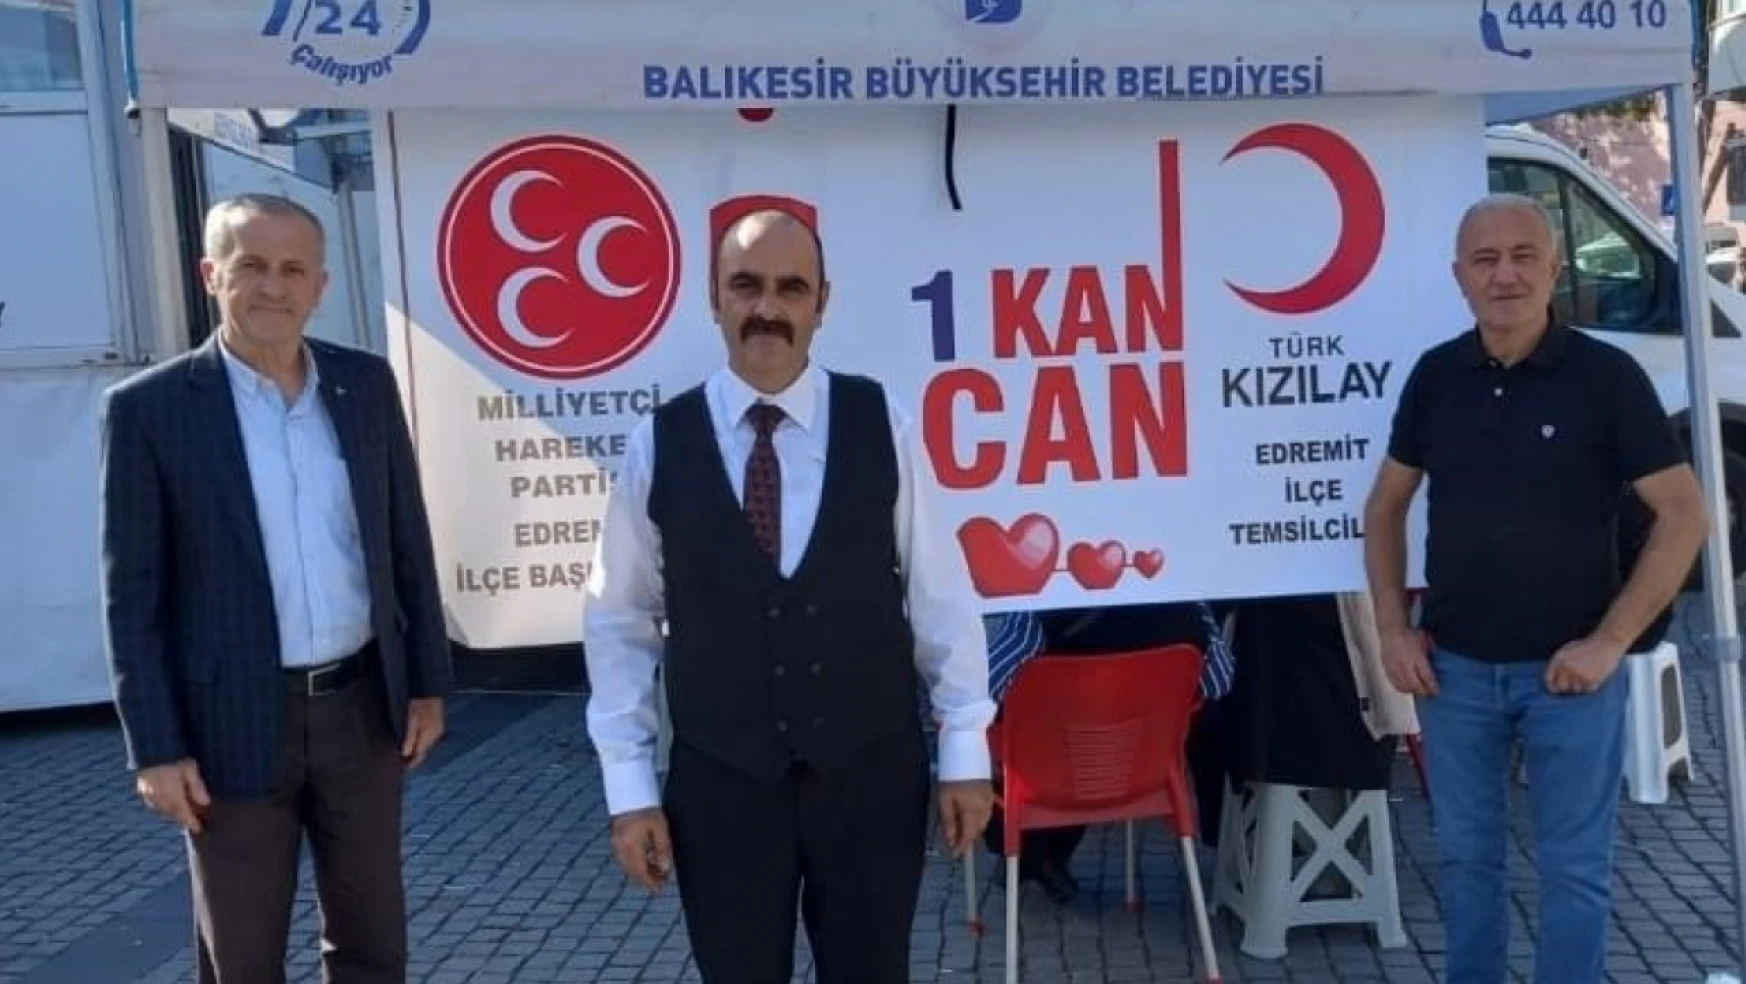 Edremit'te MHP'den kan bağış kampanyası ile Kızılay'a destek